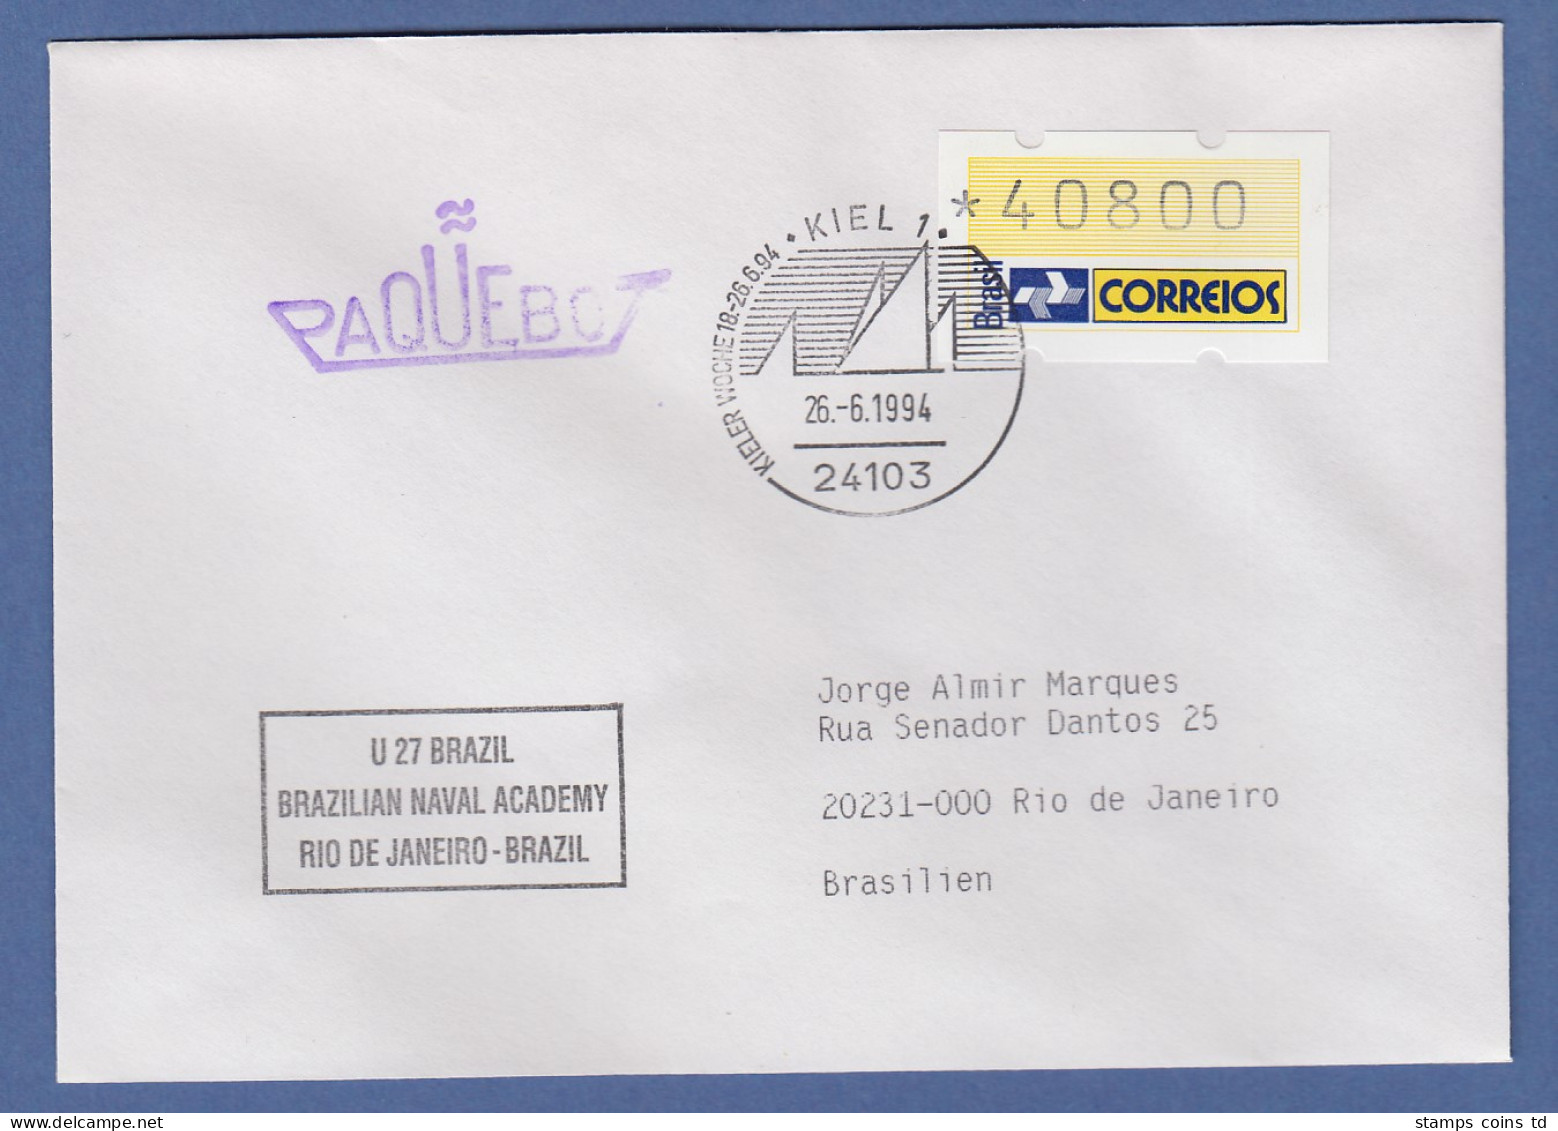 Brasilien ATM Dauerausgabe, Mi.-Nr. 4, Wert 40800 Auf Paquebot-Brief, O Kiel - Franking Labels